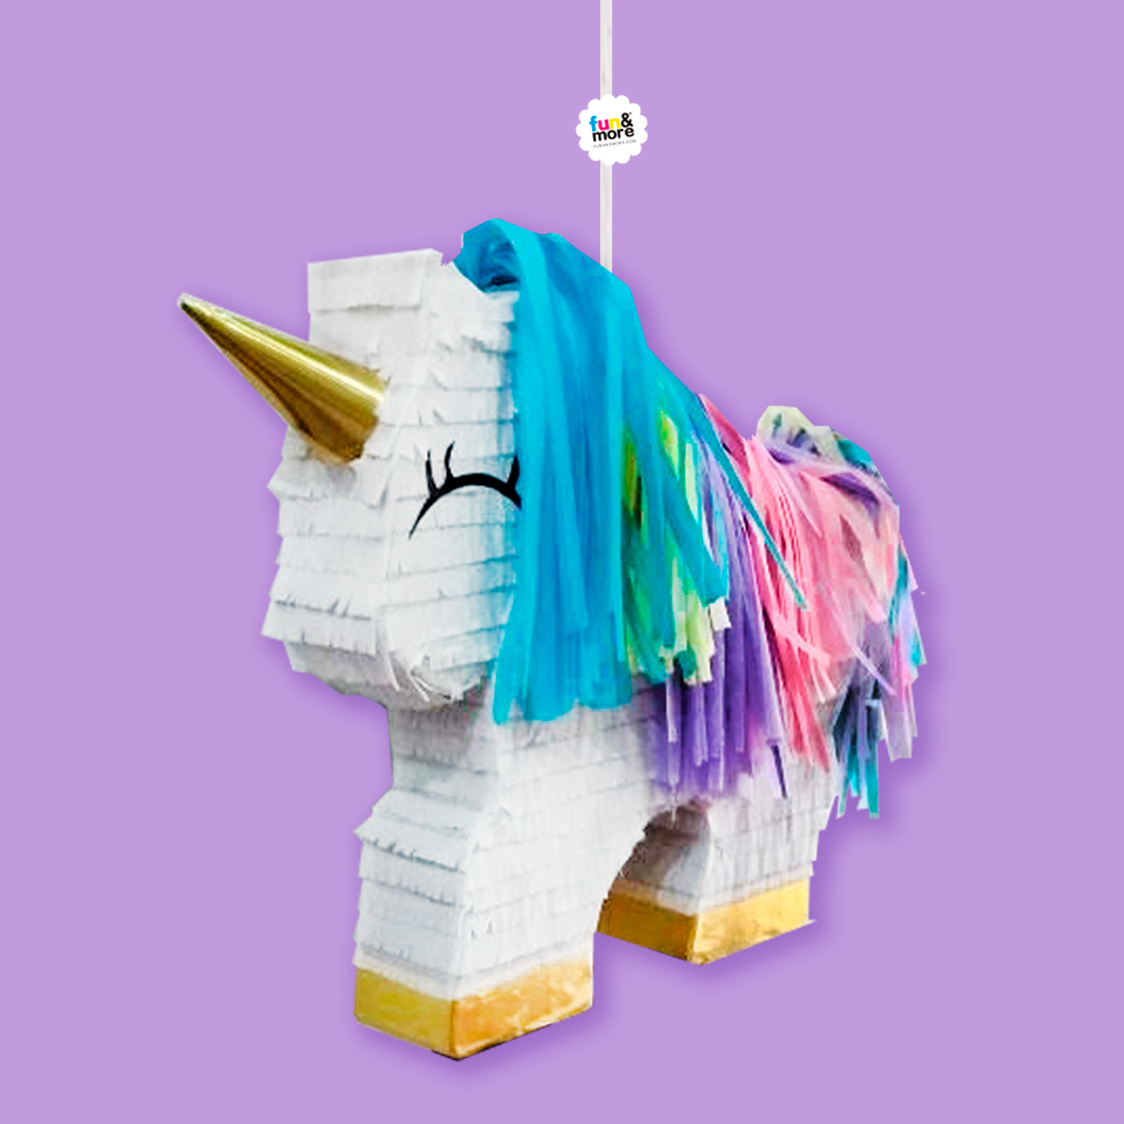 Piñata De Unicornio, Piñata De Número De Unicornio, Fiesta De Unicornio,  Ideas De Fiesta De Unicornio, Piñata De Unicornio Personalizada 